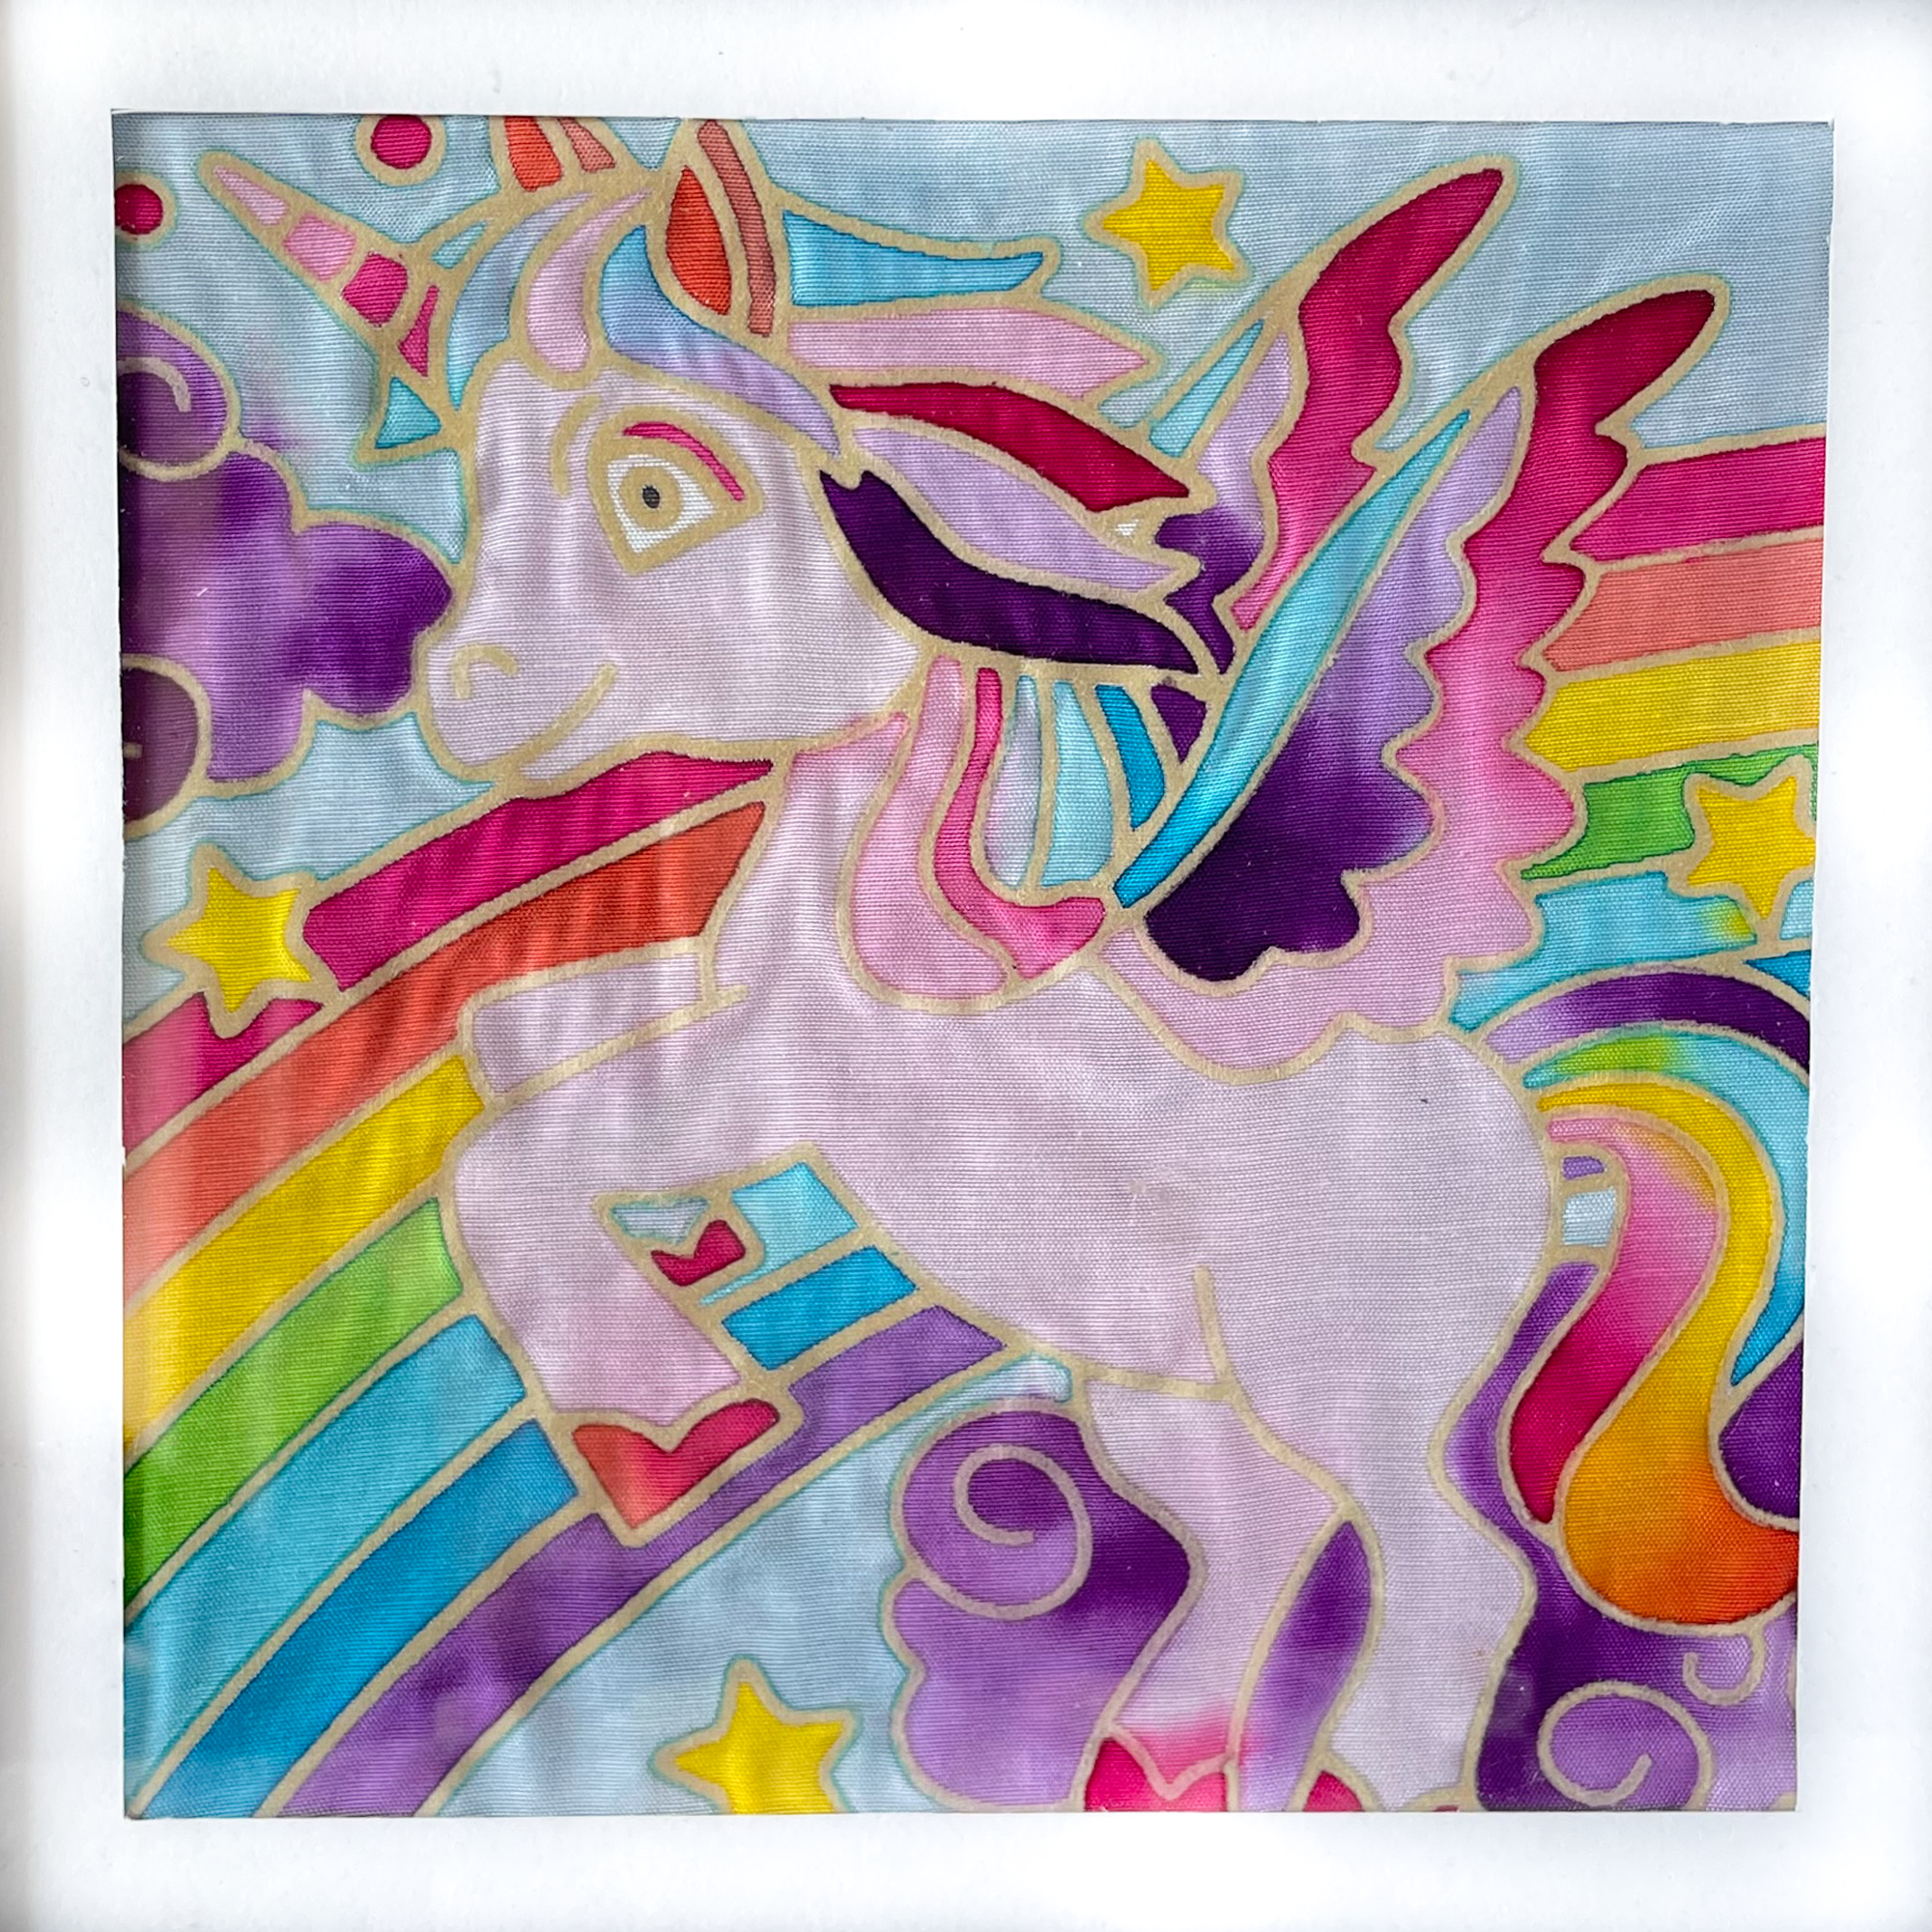 Diamond Art Kit 8x 8 Beginner Fun Unicorn